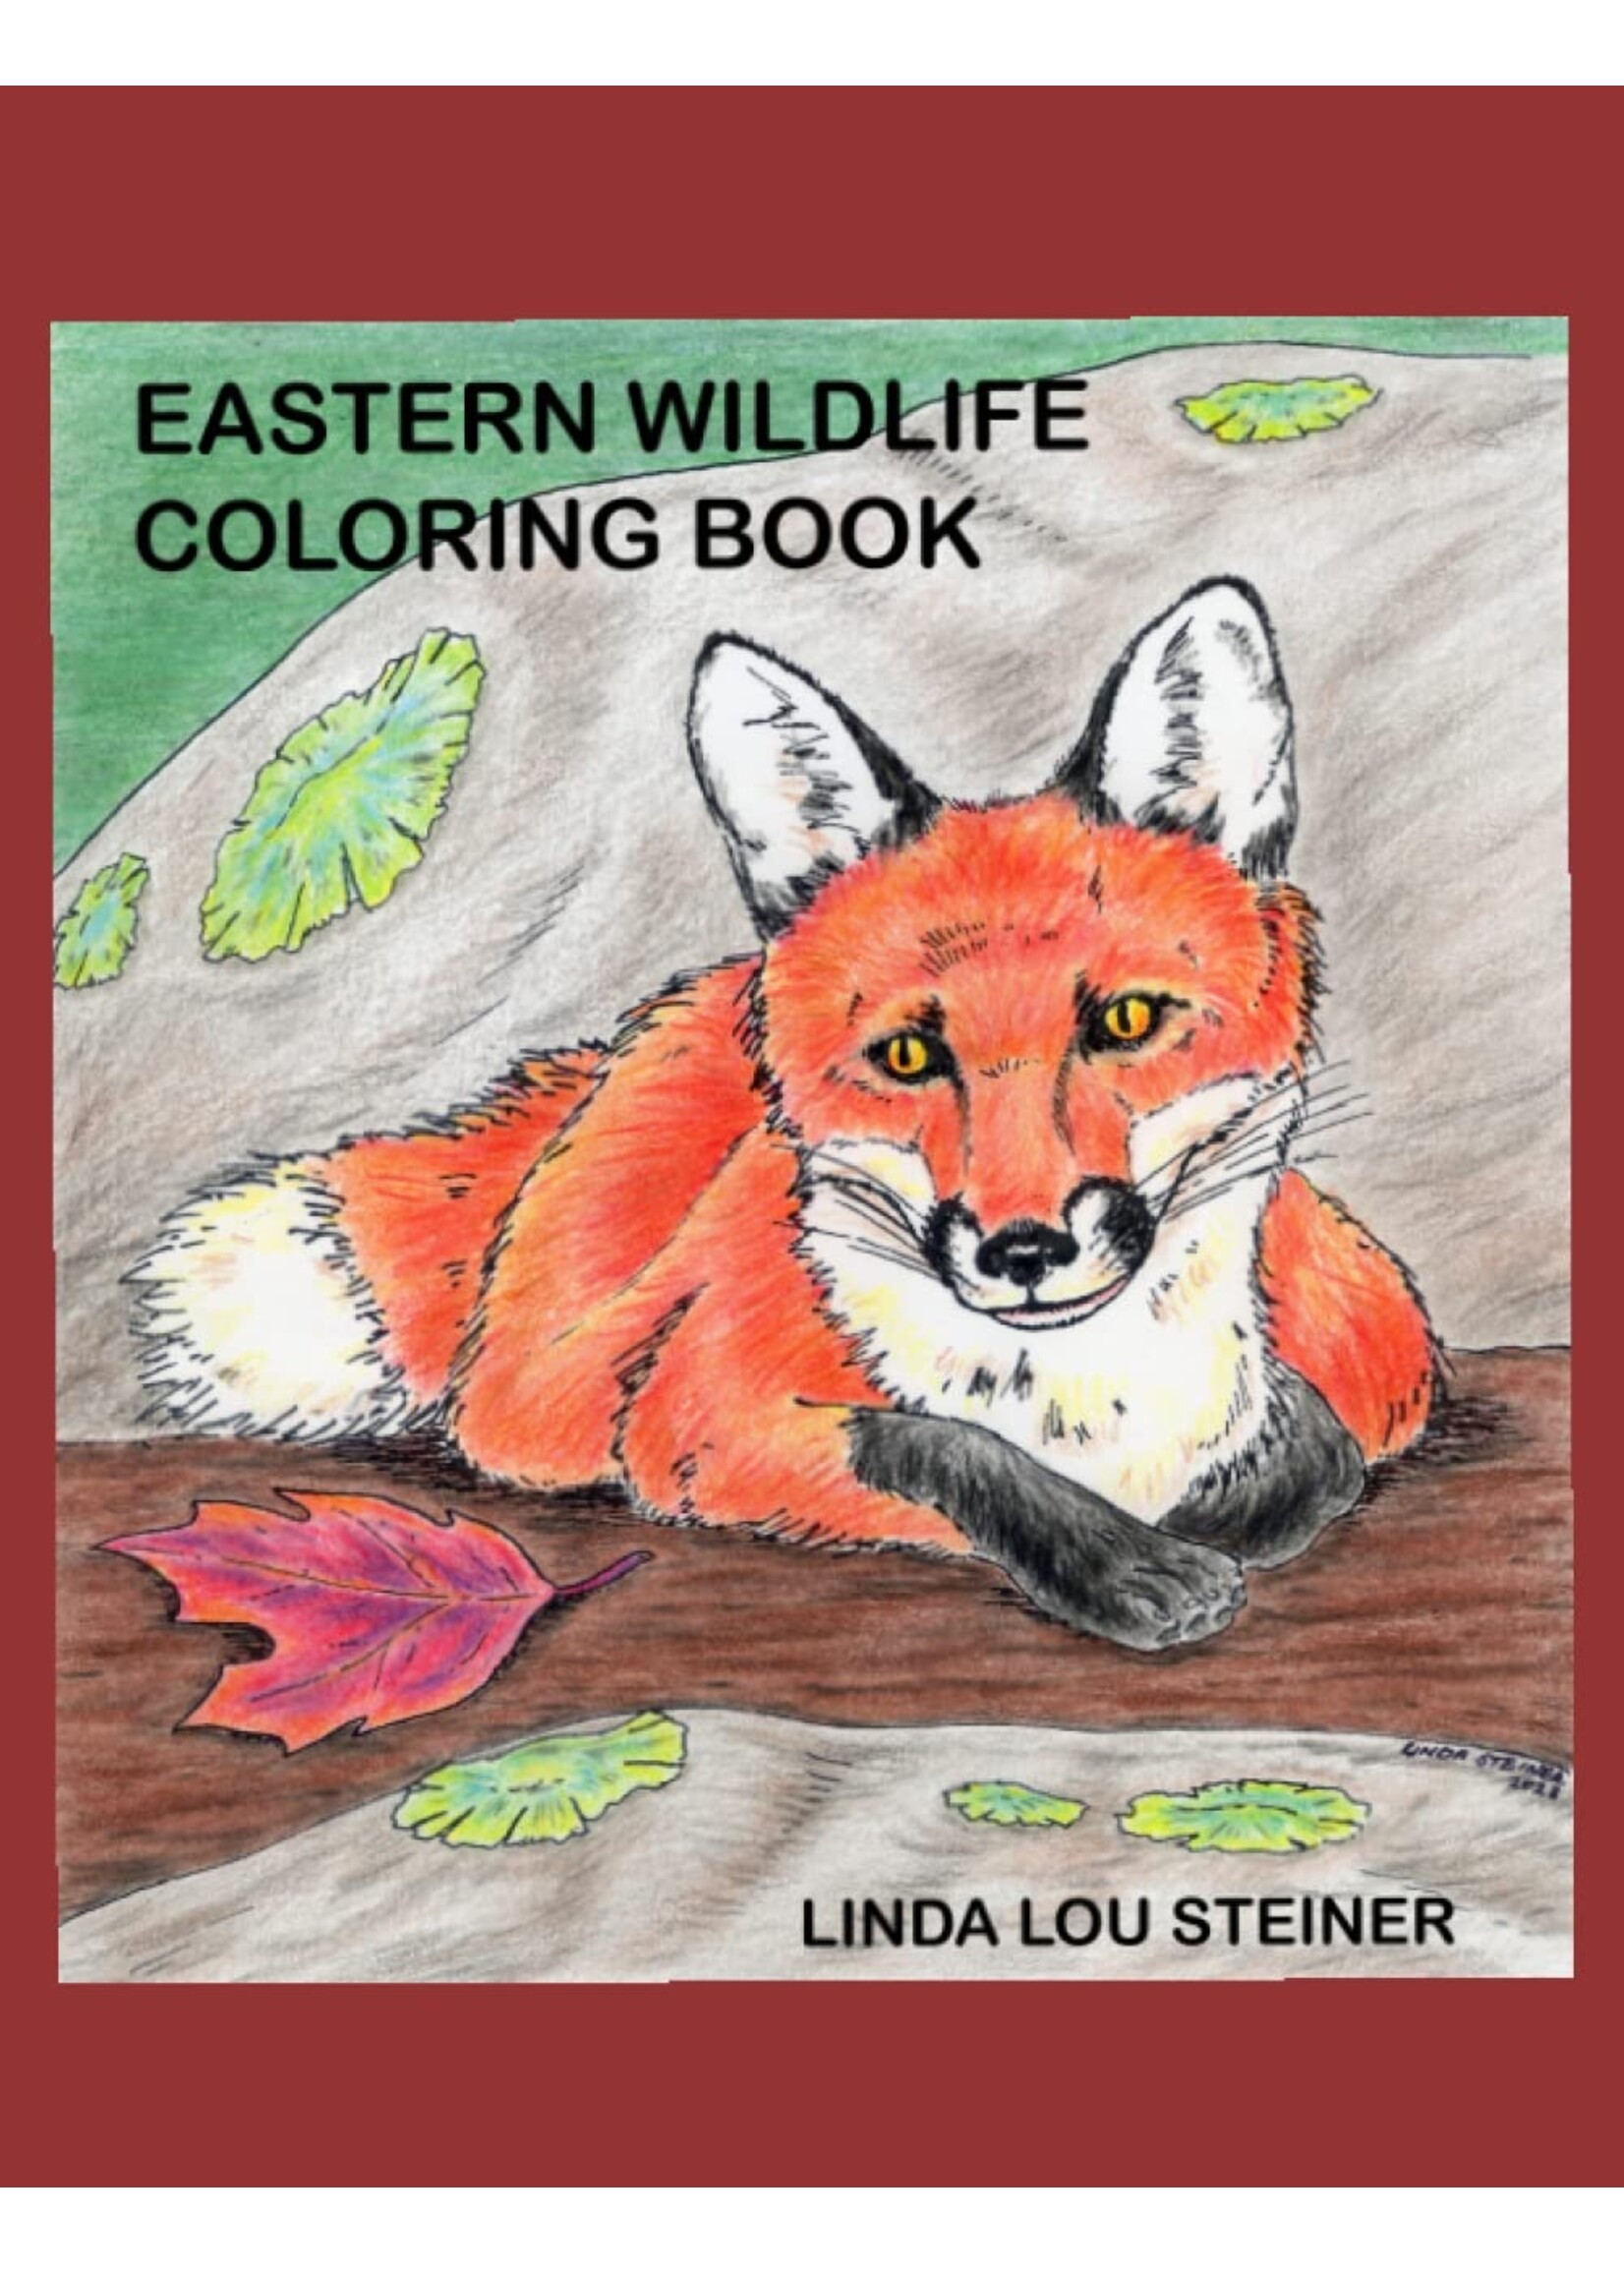 Eastern Wildlife Coloring Book by Linda Lou Steiner